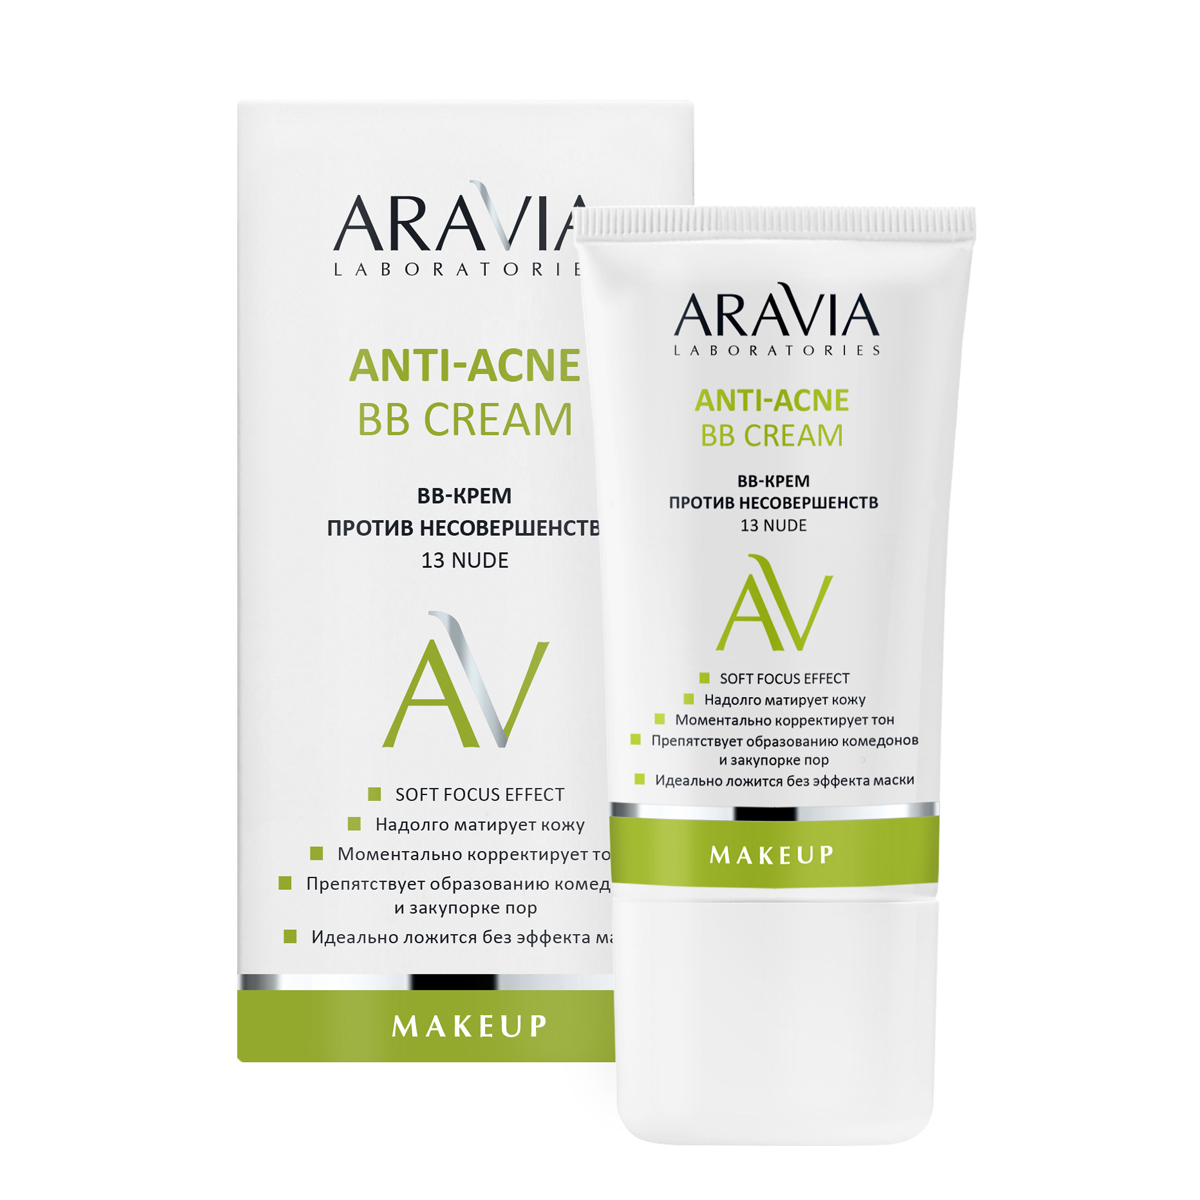 Aravia Laboratories ВВ-Крем против несовершенств 13 Nude Anti-acne, 50 мл (Aravia Laboratories, Уход за лицом)